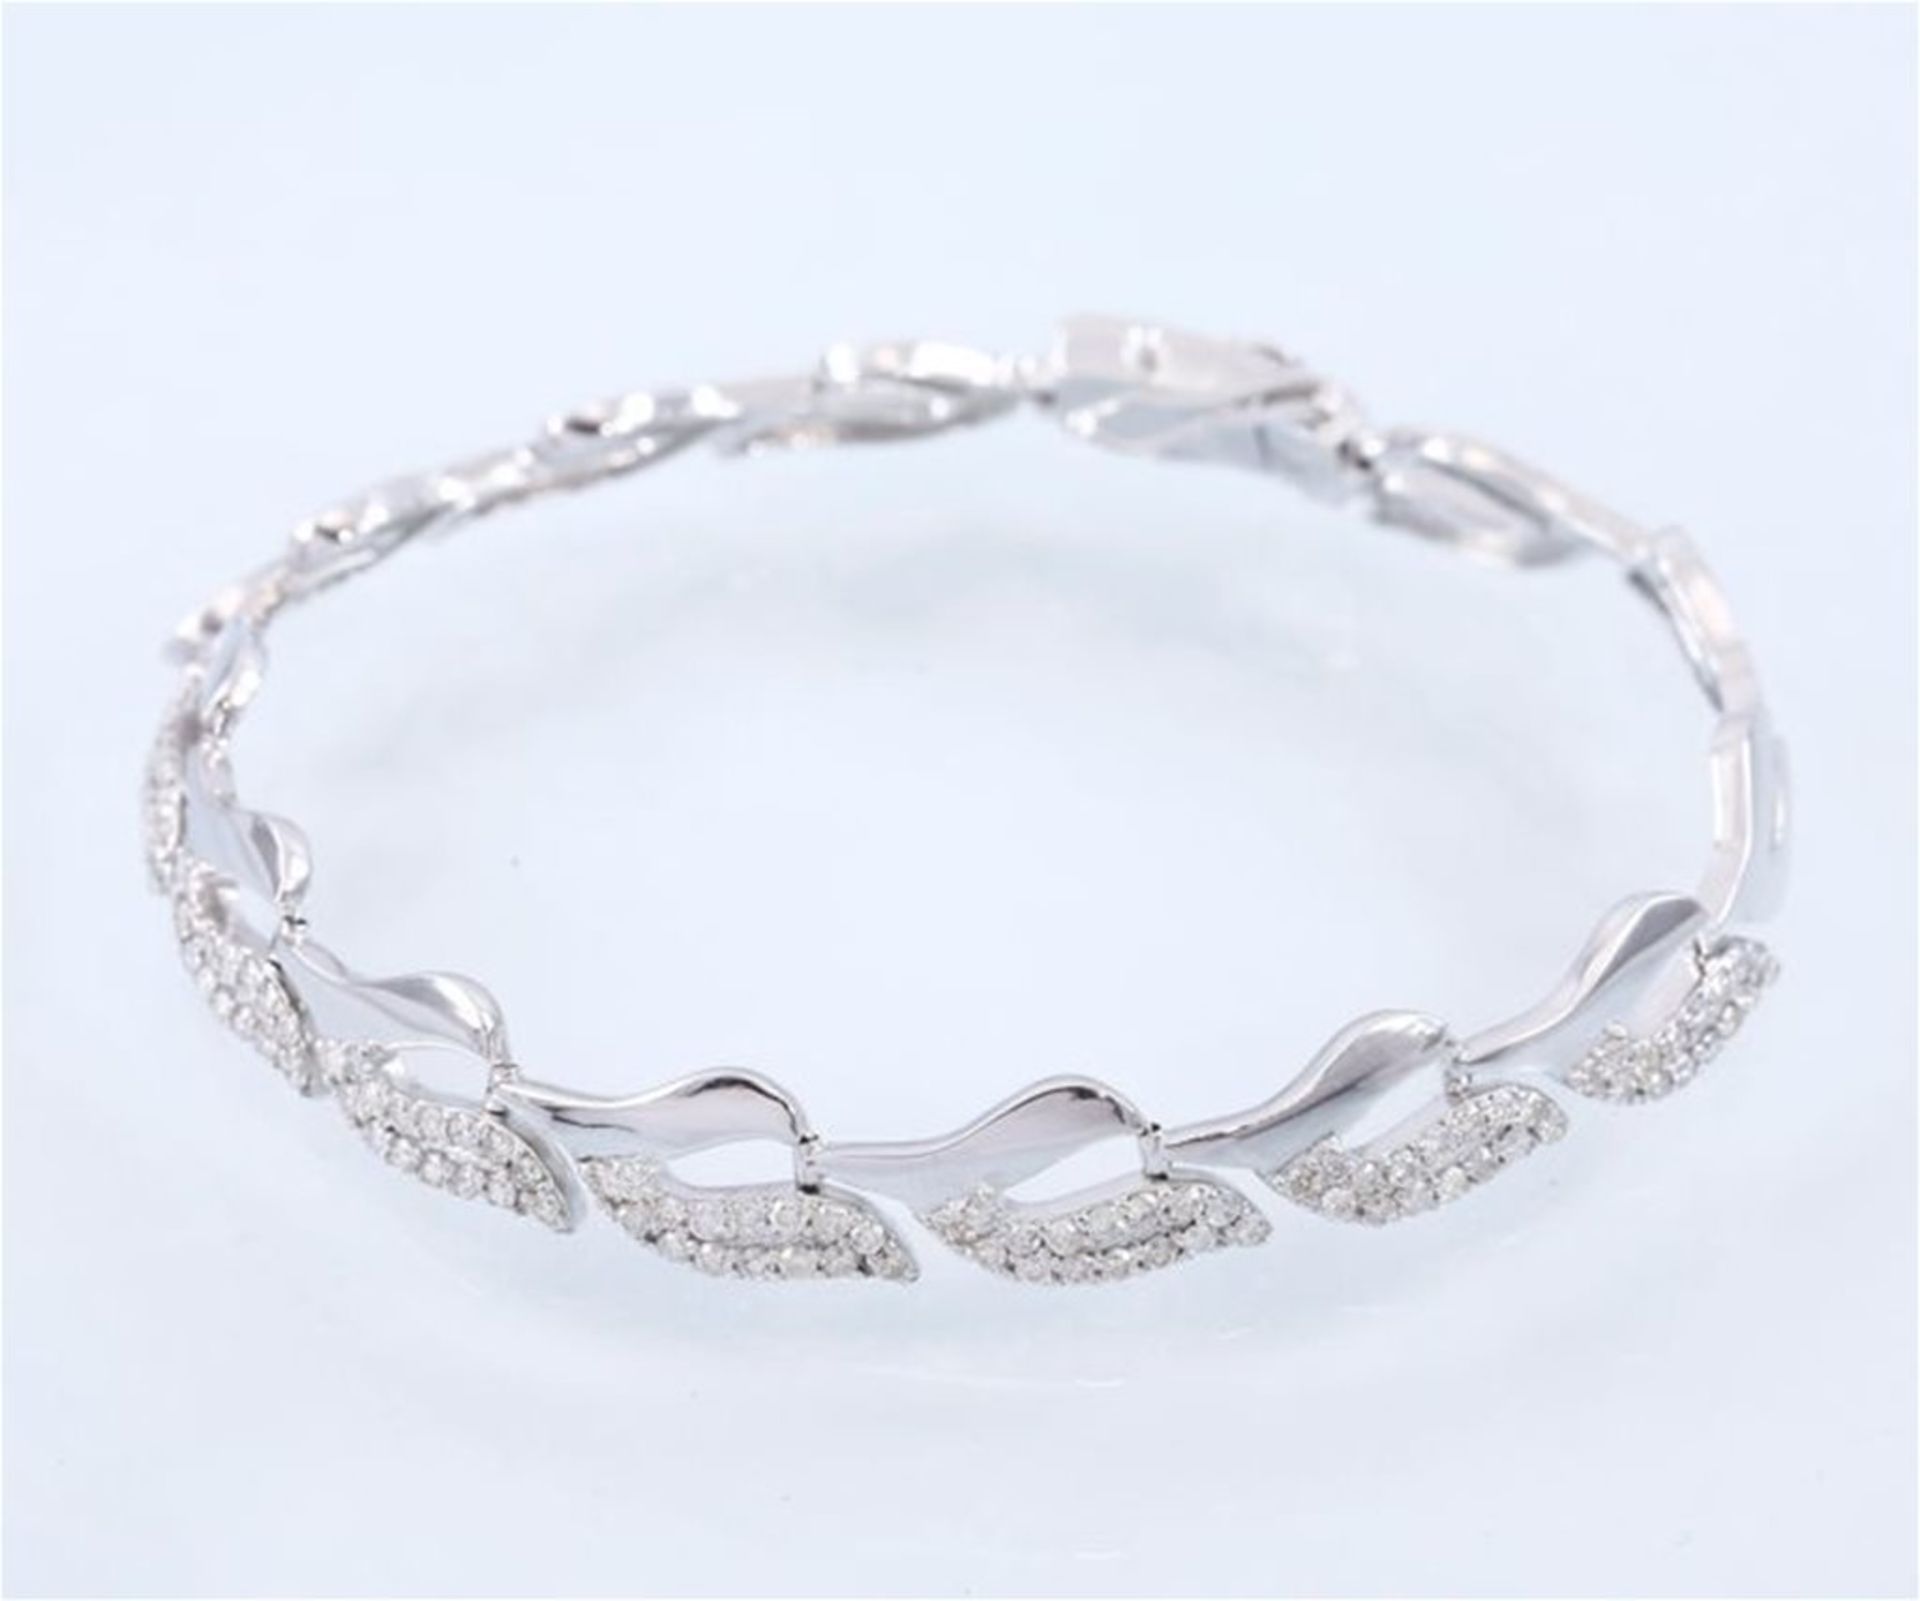 IGI Certified 14 K / 585 White Gold 2.76 ct. Designer Diamond Bracelet - Leaf Design - Image 2 of 10